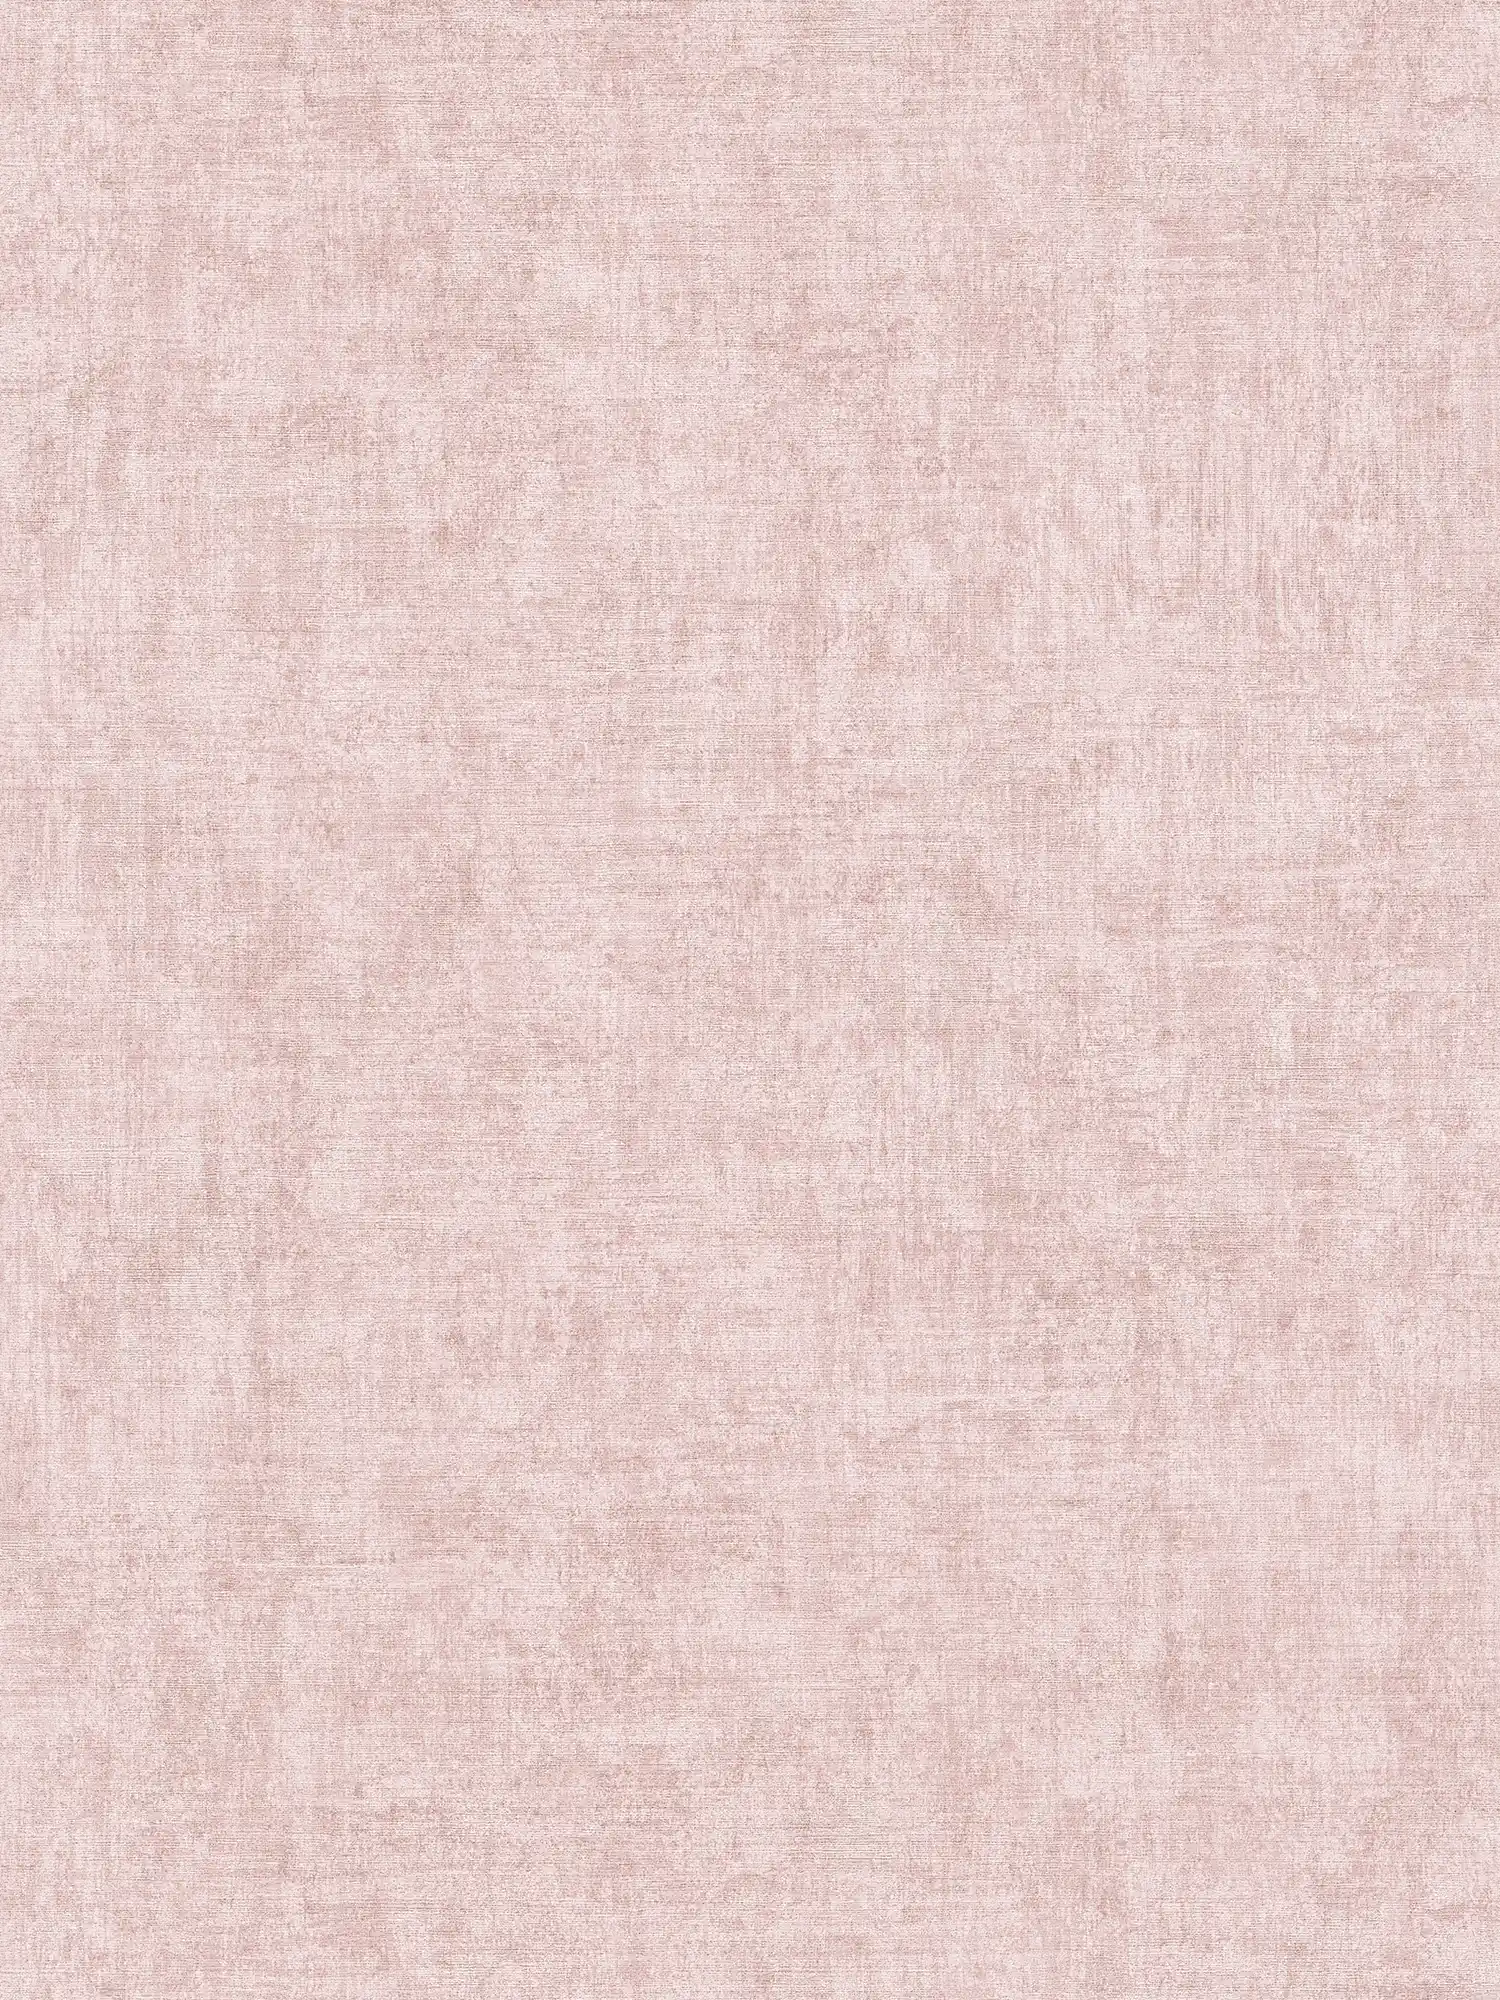 Carta da parati in tessuto non tessuto a tinta unita, con motivo screziato e strutturato - rosa
